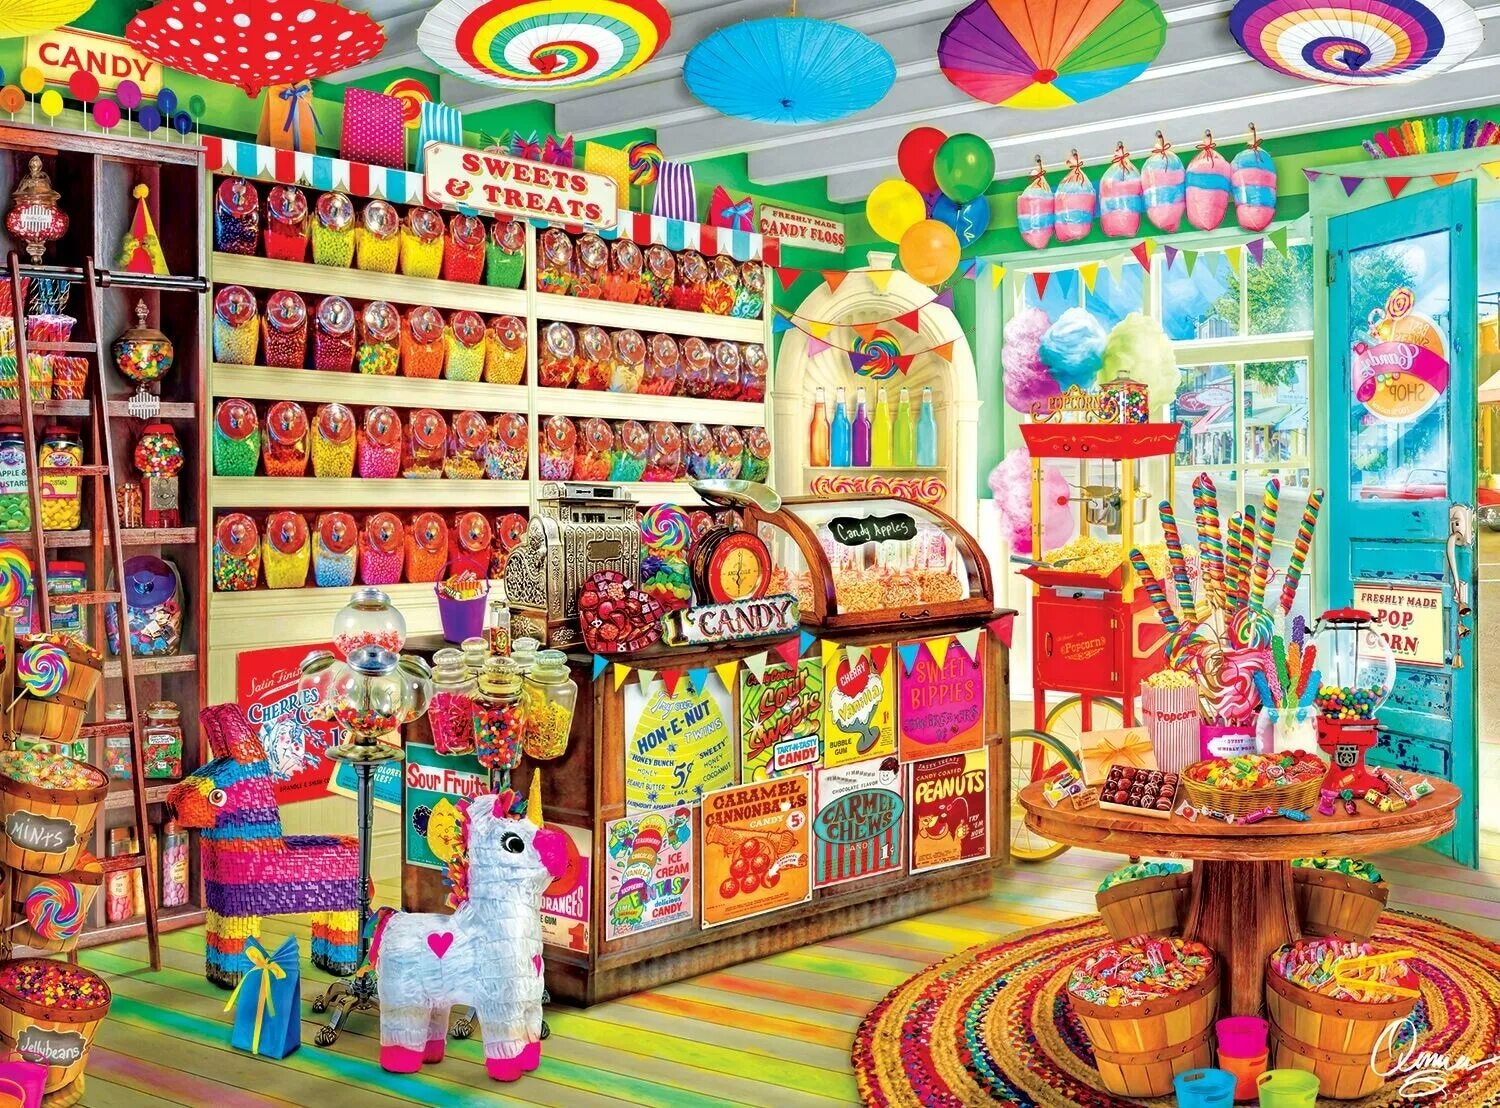 Склад сладостей. Candy Candy shop магазин сладостей. Детские сладости. Интерьер магазина сладостей. Витрина магазина сладостей.